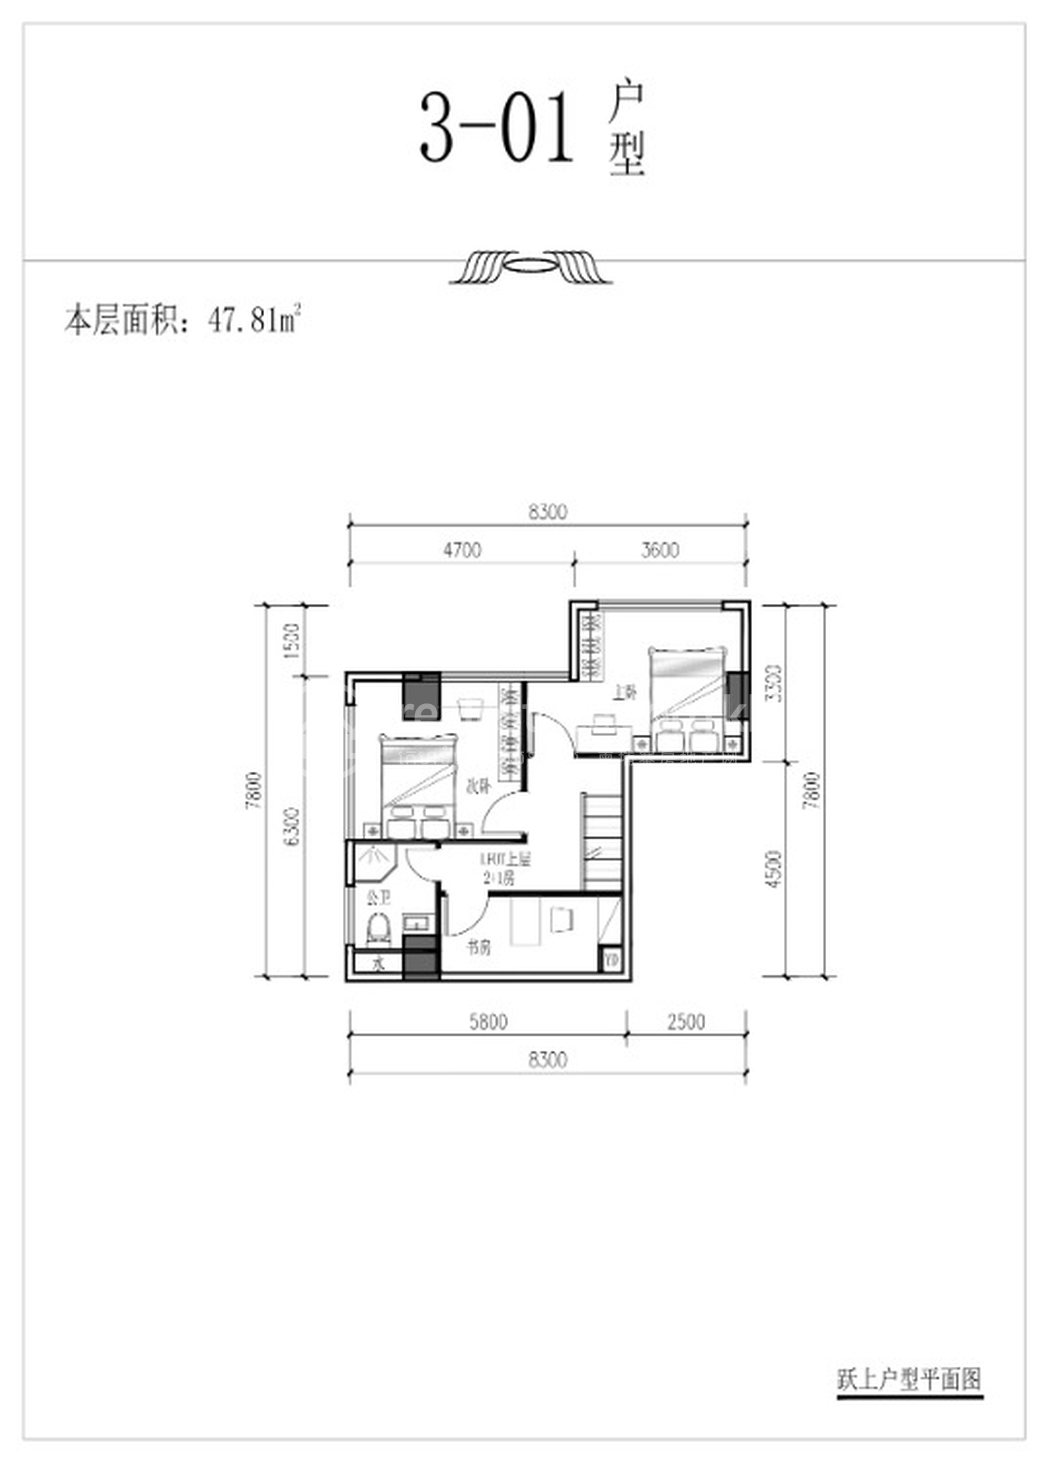 3#楼户型_page-0002.jpg